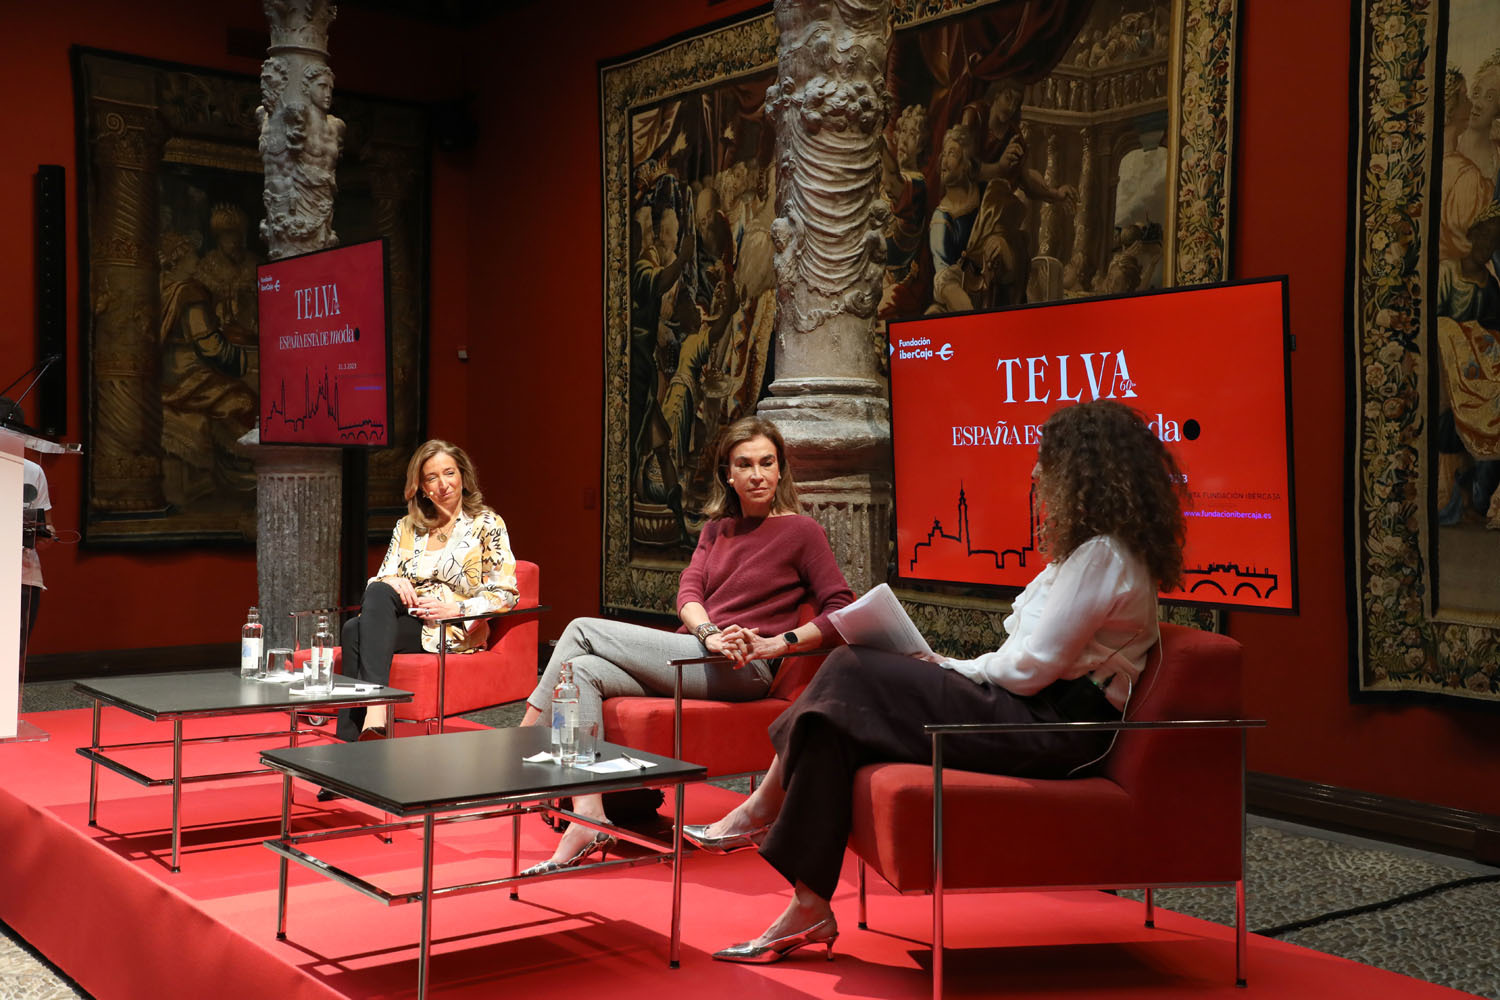 Natalia Bajo, directora de TELVA.com moderó la Mesa "Cultura y educación que mejoran la vida" junto con Carmen Posadas y Carmen de Lasala